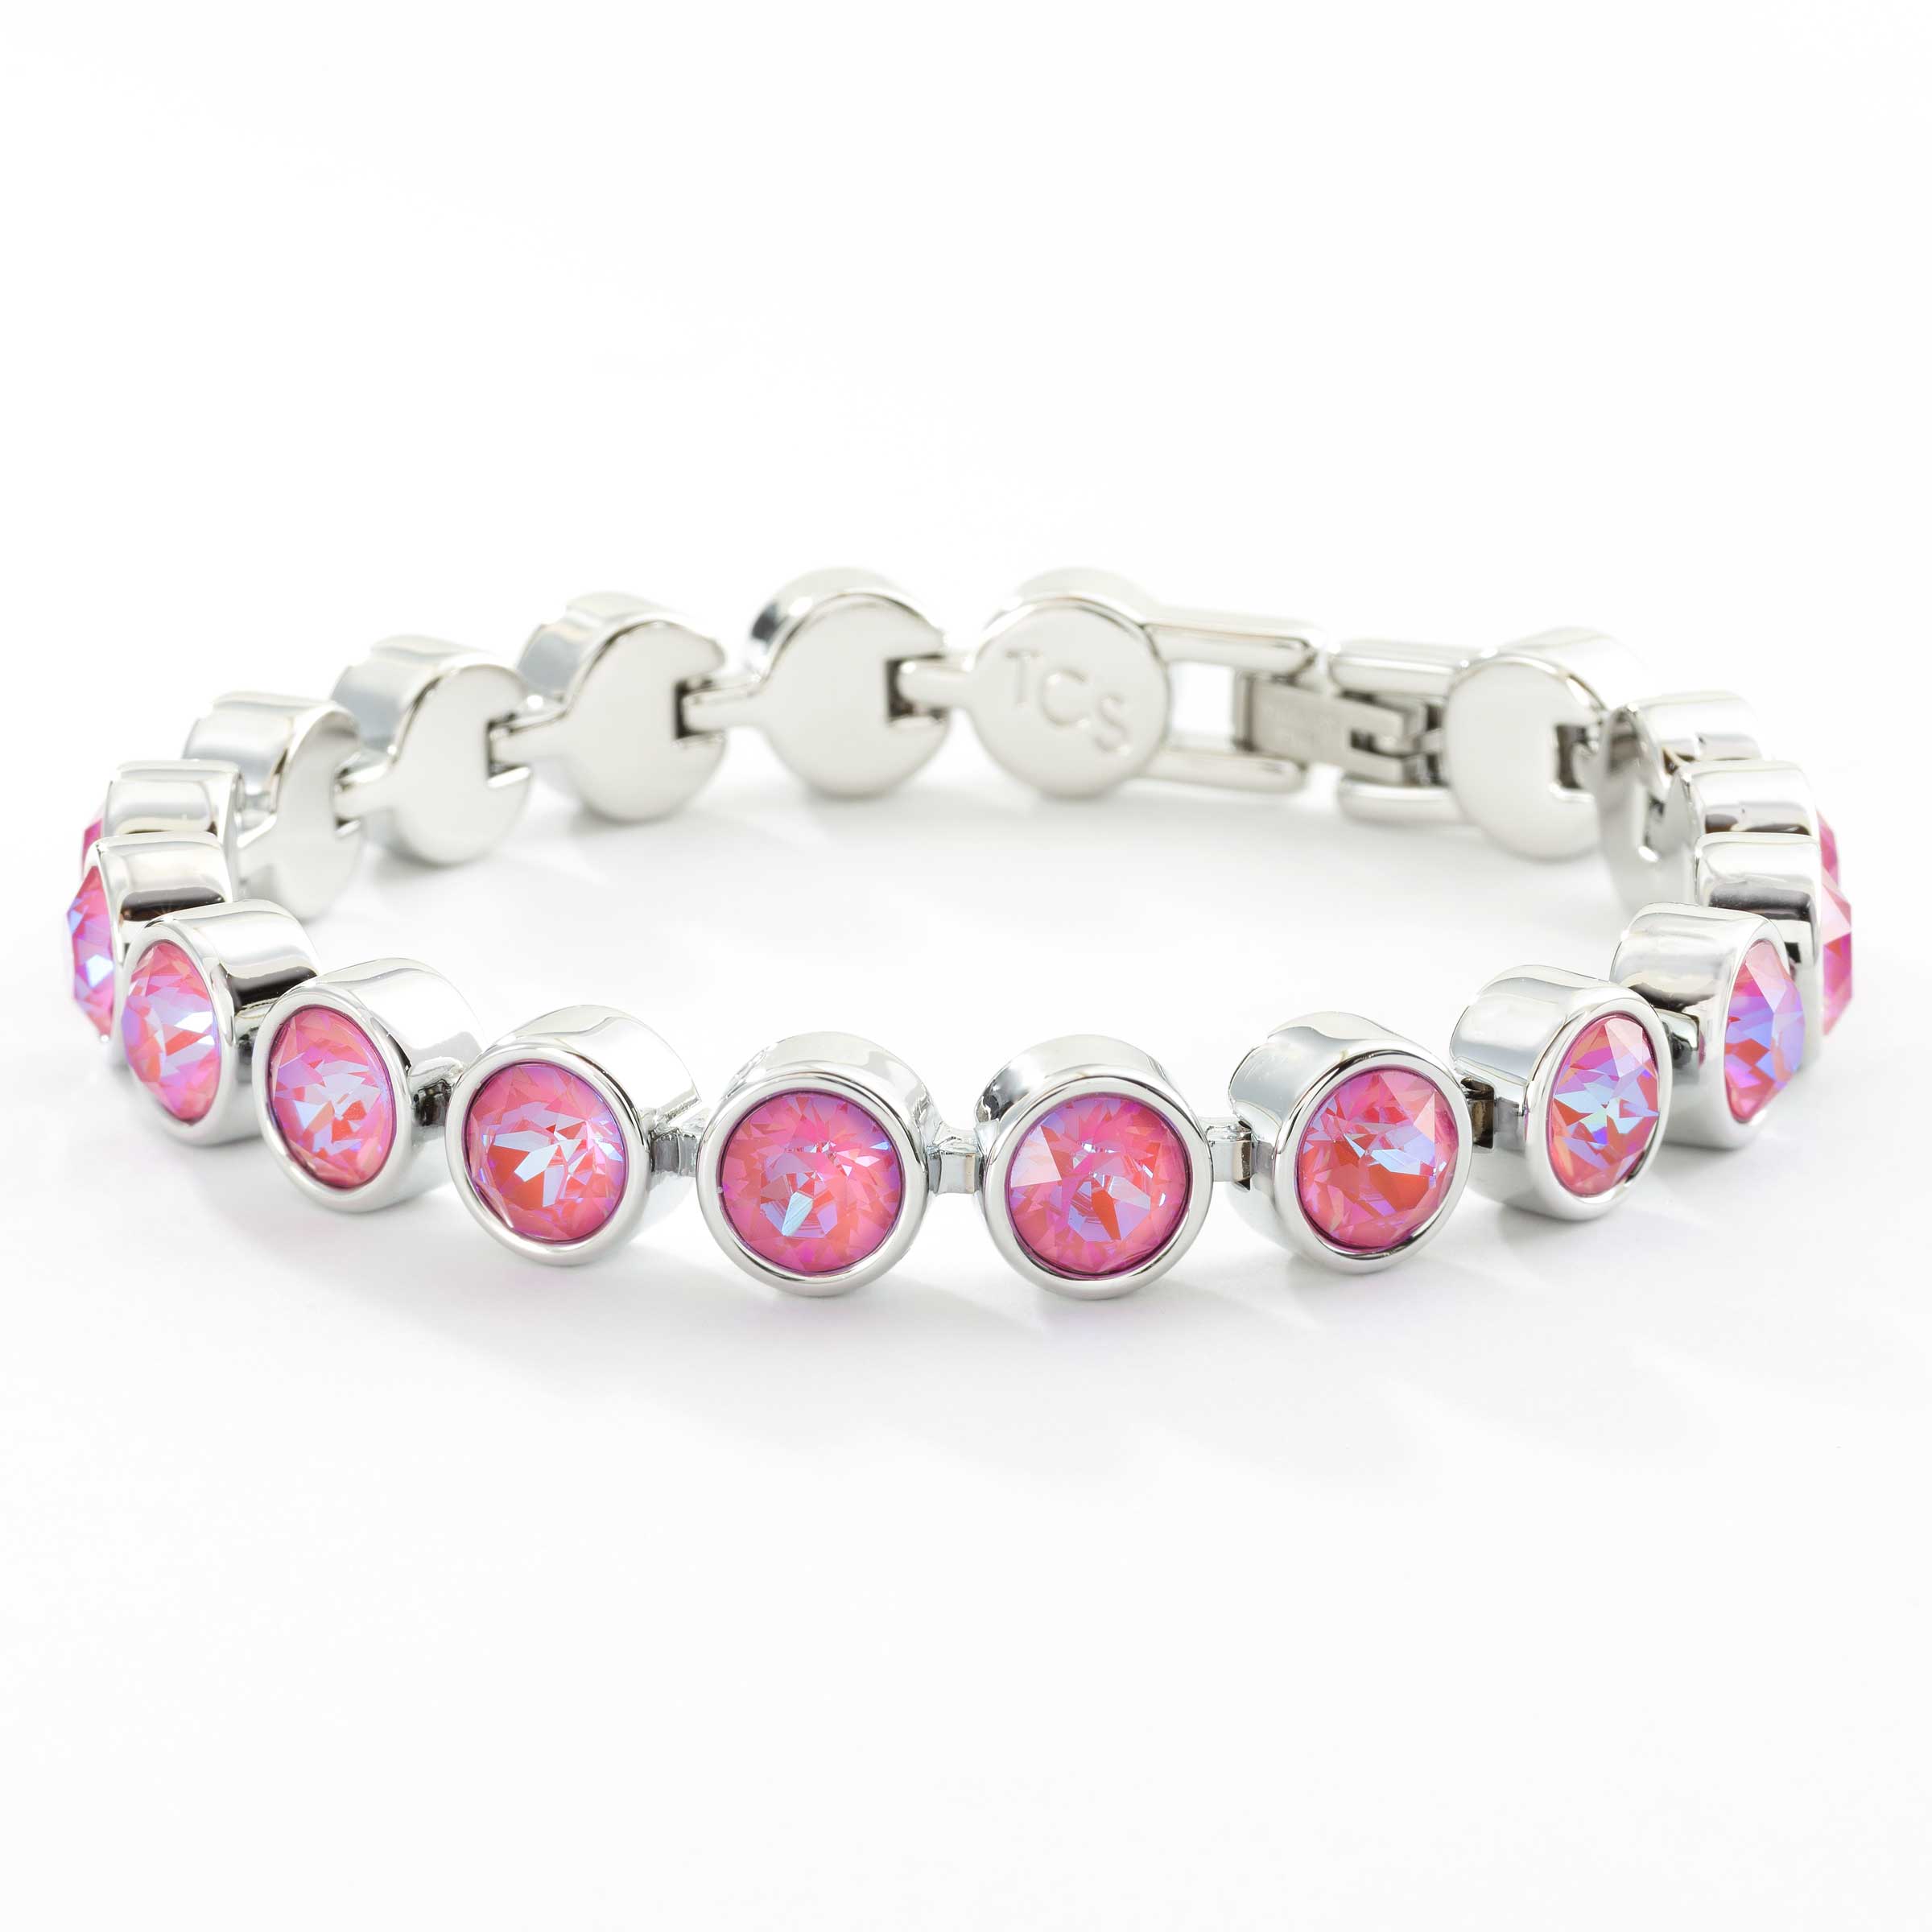 Pink Crystal Bracelet Choose Your Finish Special Gift For Her . LOTUS PINK DELITE Crystal Stretch Tennis Bracelet